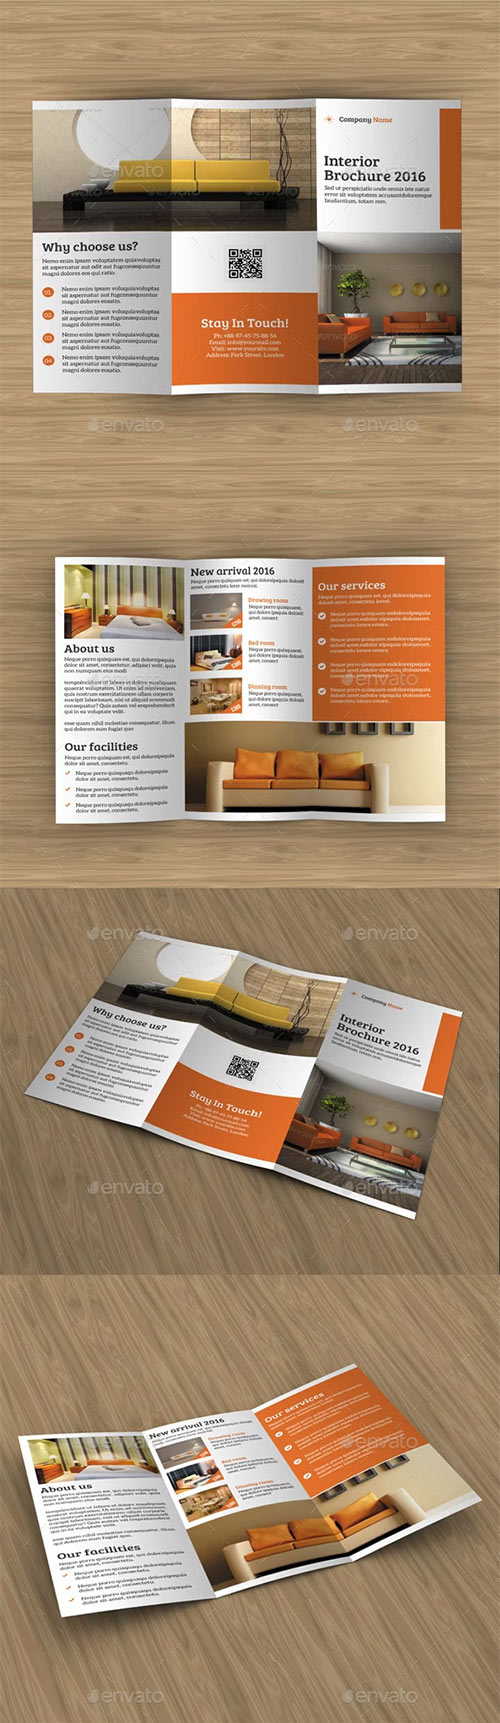 Interior Tri- Fold Brochure 14917158